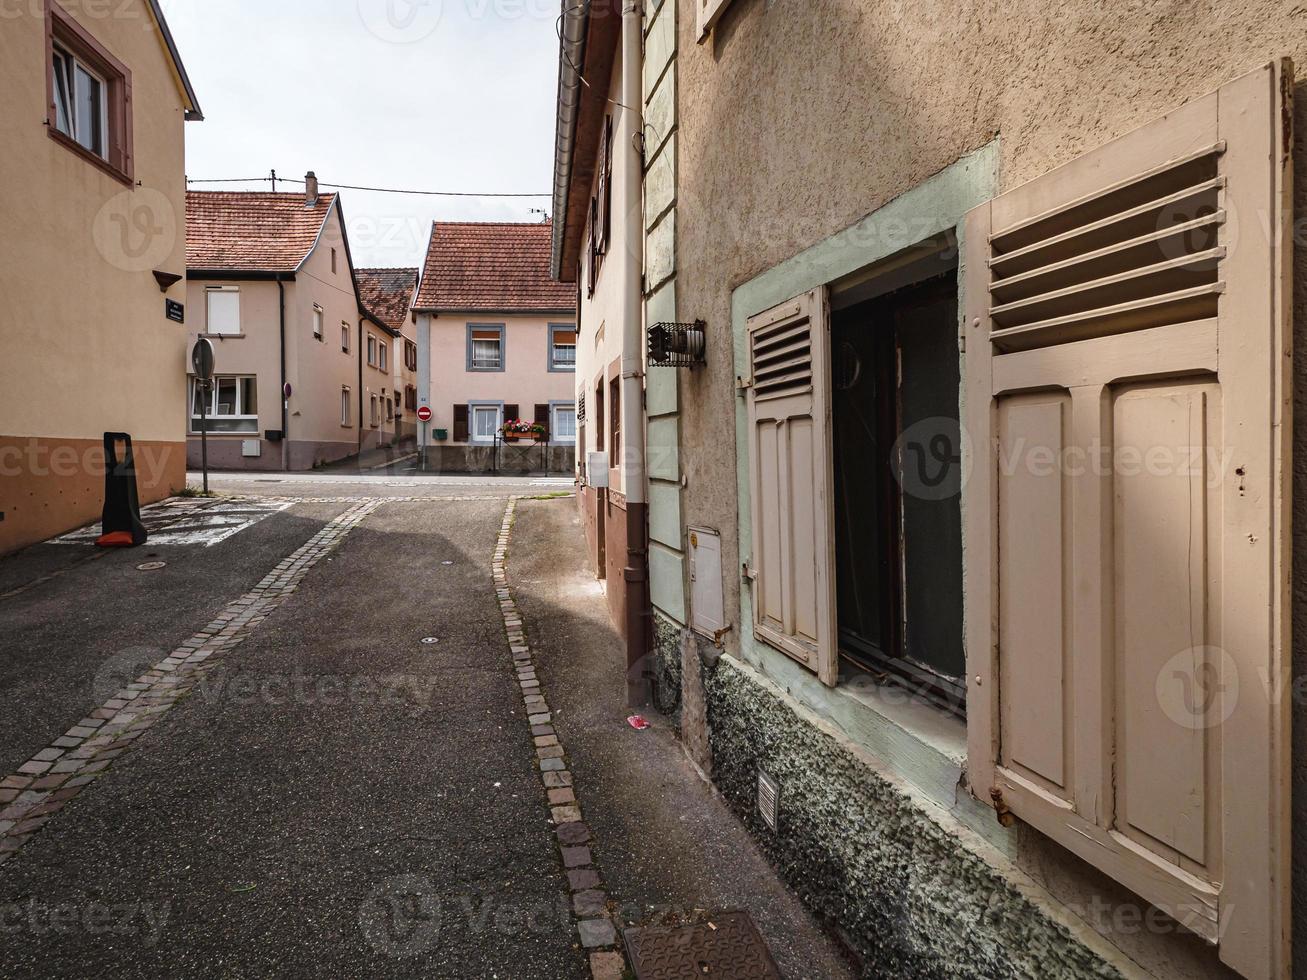 vieilles rues et village médiéval marmoutier, alsace photo